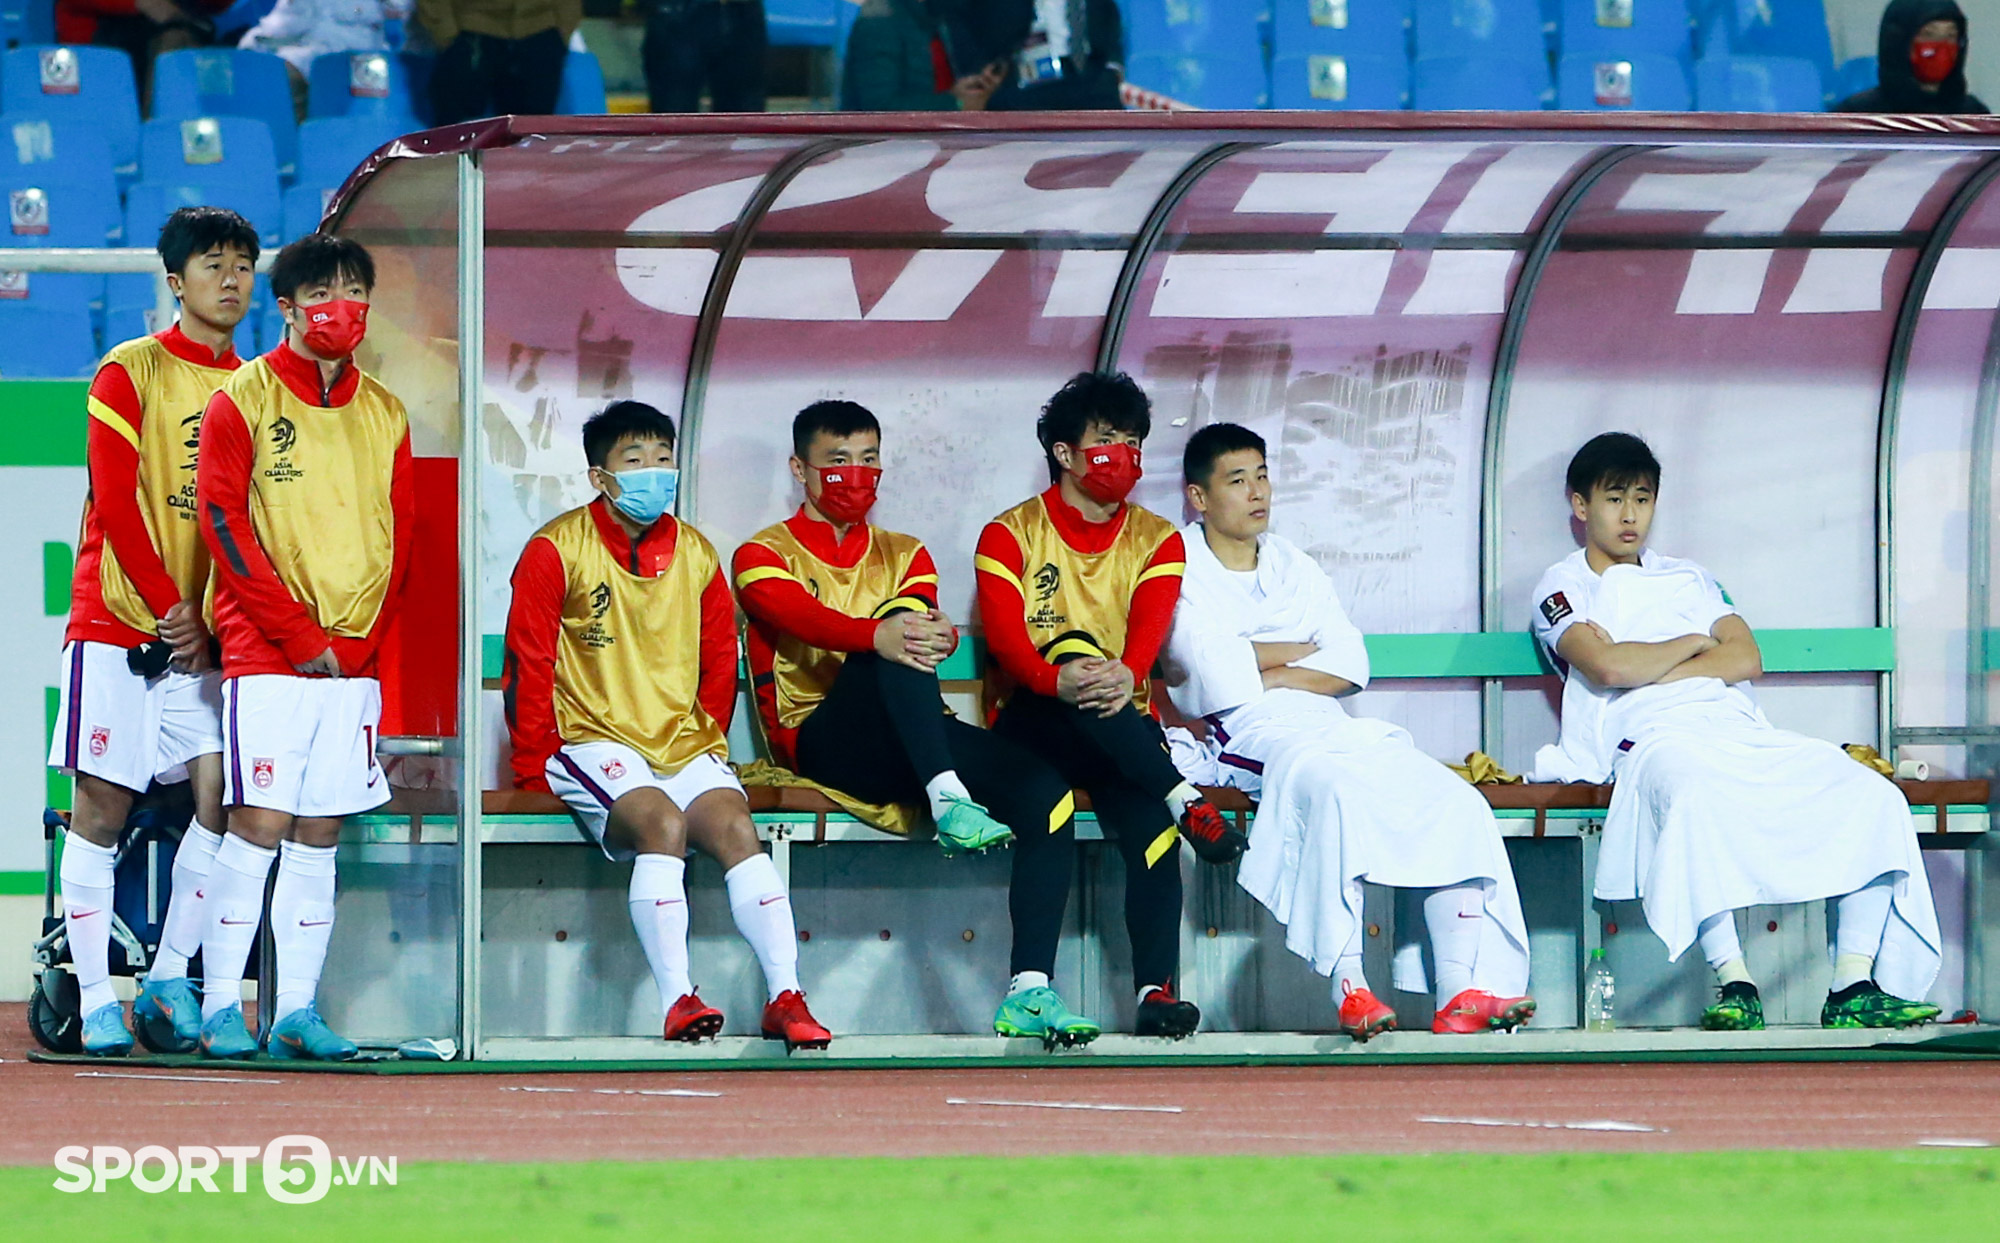 Ngôi sao Trung Quốc chán nản ở cabin, tranh cãi với đồng đội khi thua tuyển Việt Nam - Ảnh 3.